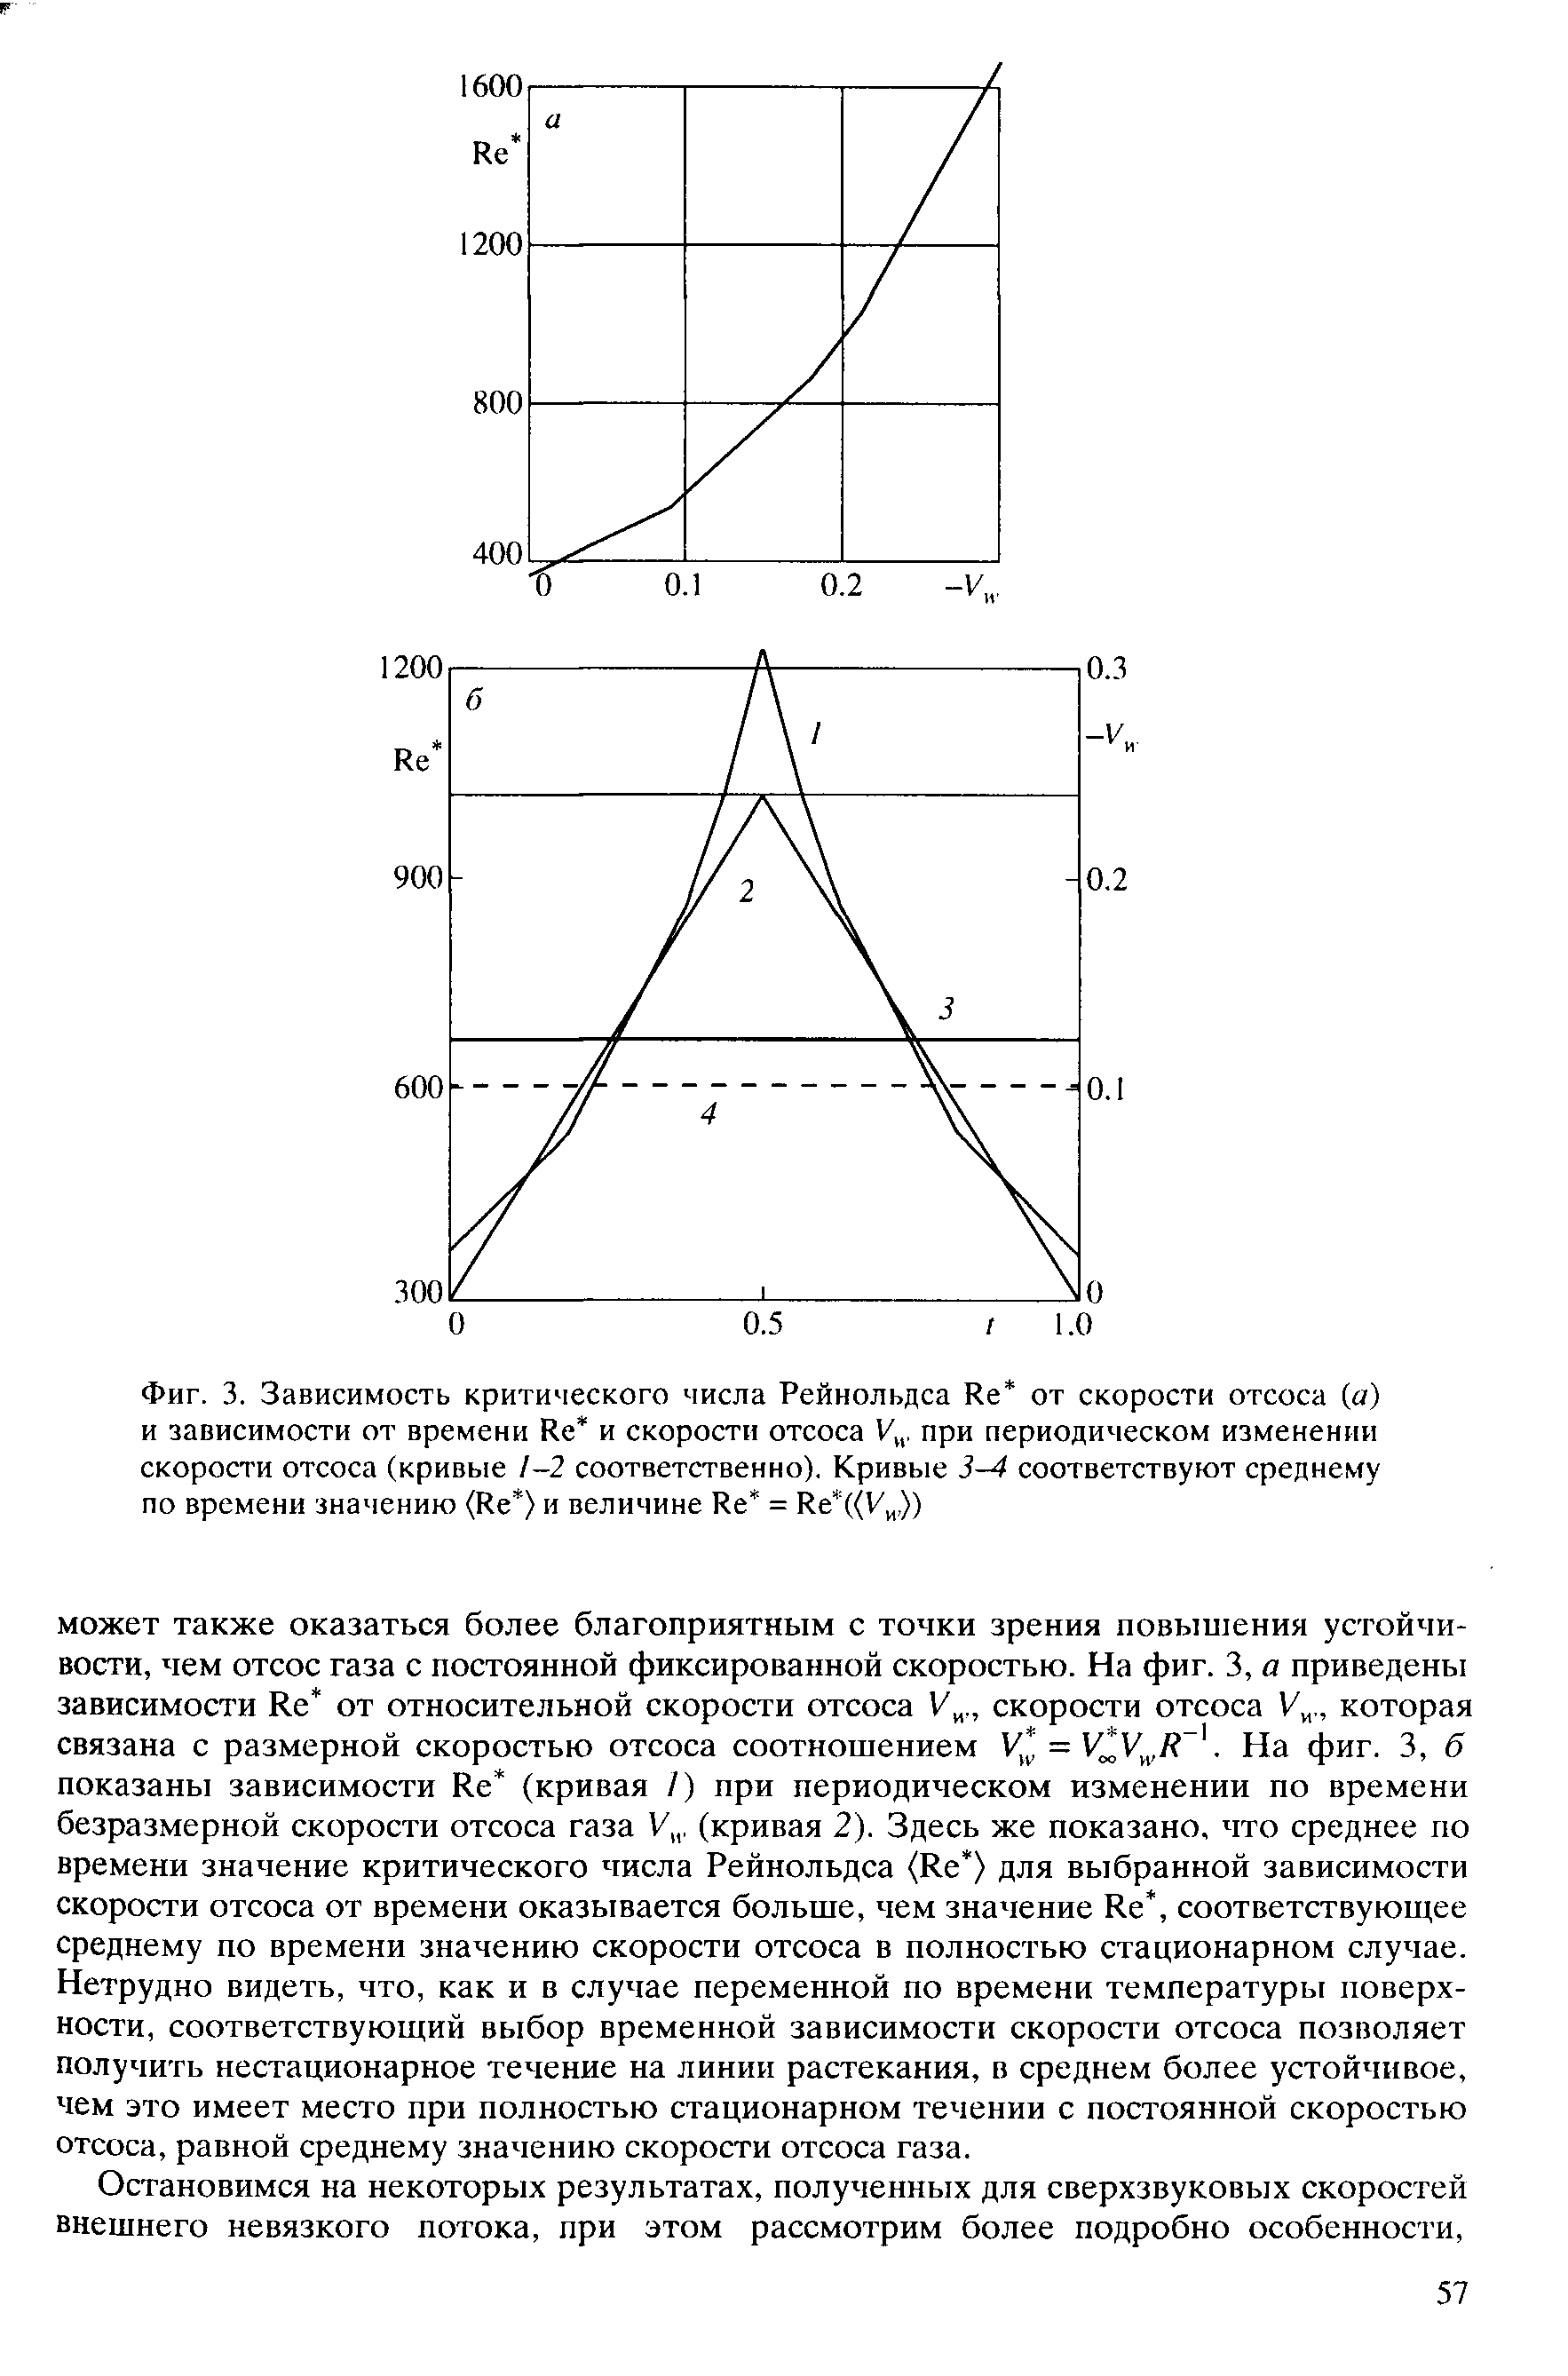 Фиг. 3. Зависимость <a href="/info/21852">критического числа Рейнольдса</a> Ке от скорости отсоса (а) и зависимости от времени Ке и скорости отсоса при периодическом <a href="/info/437938">изменении скорости</a> отсоса (кривые /-2 соответственно). Кривые 3-4 соответствуют среднему по времени значению (Ке ) и величине Ке = Ке ((У ,))
